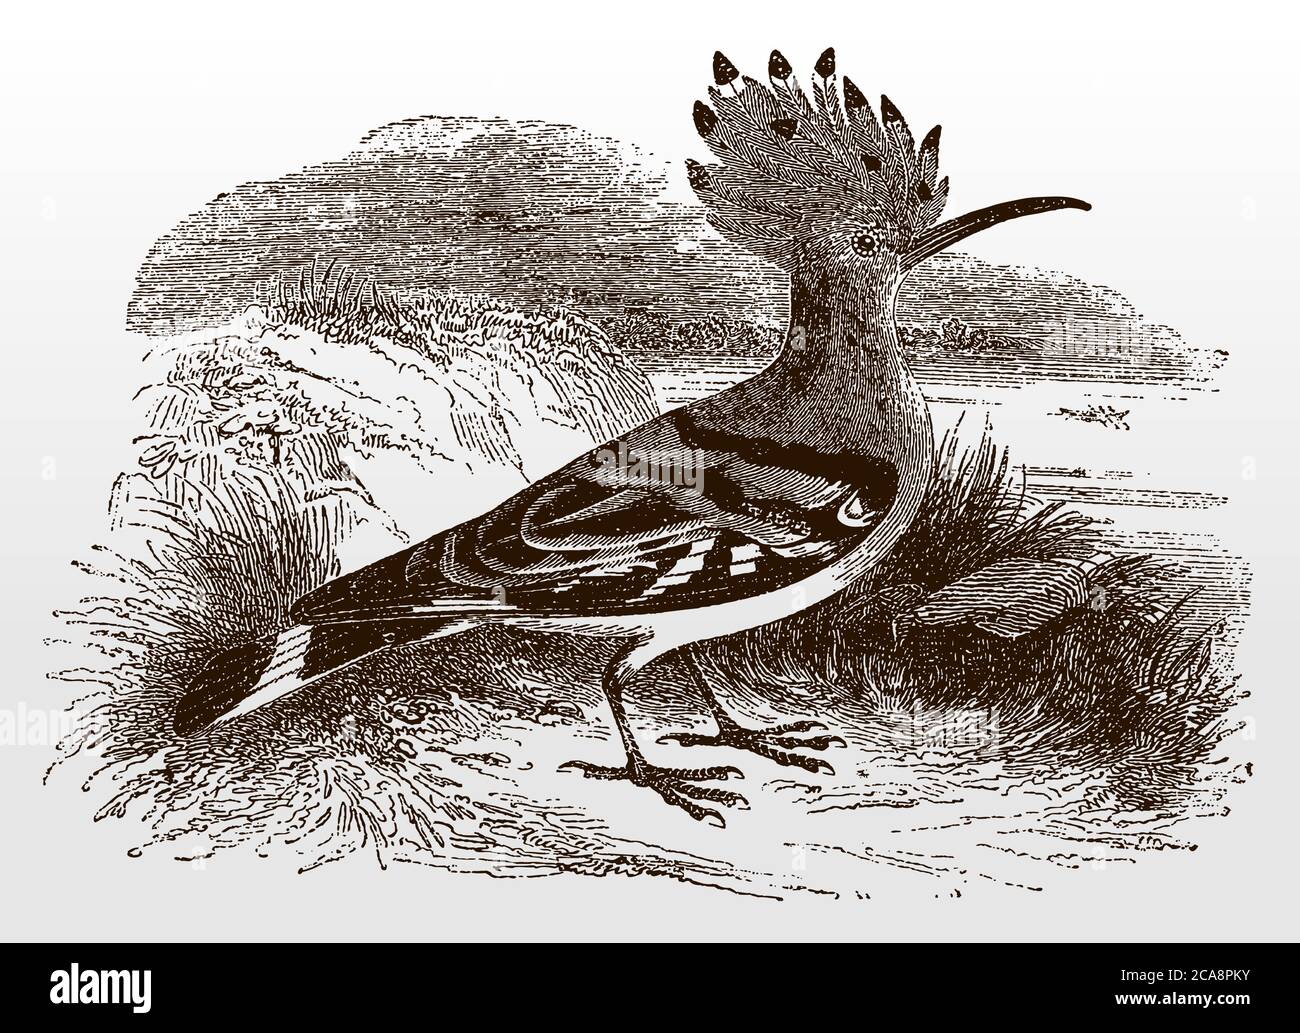 Le hoopo eurasien, upupa épops en vue latérale debout dans un paysage herbeux, après une illustration antique du XIXe siècle Illustration de Vecteur